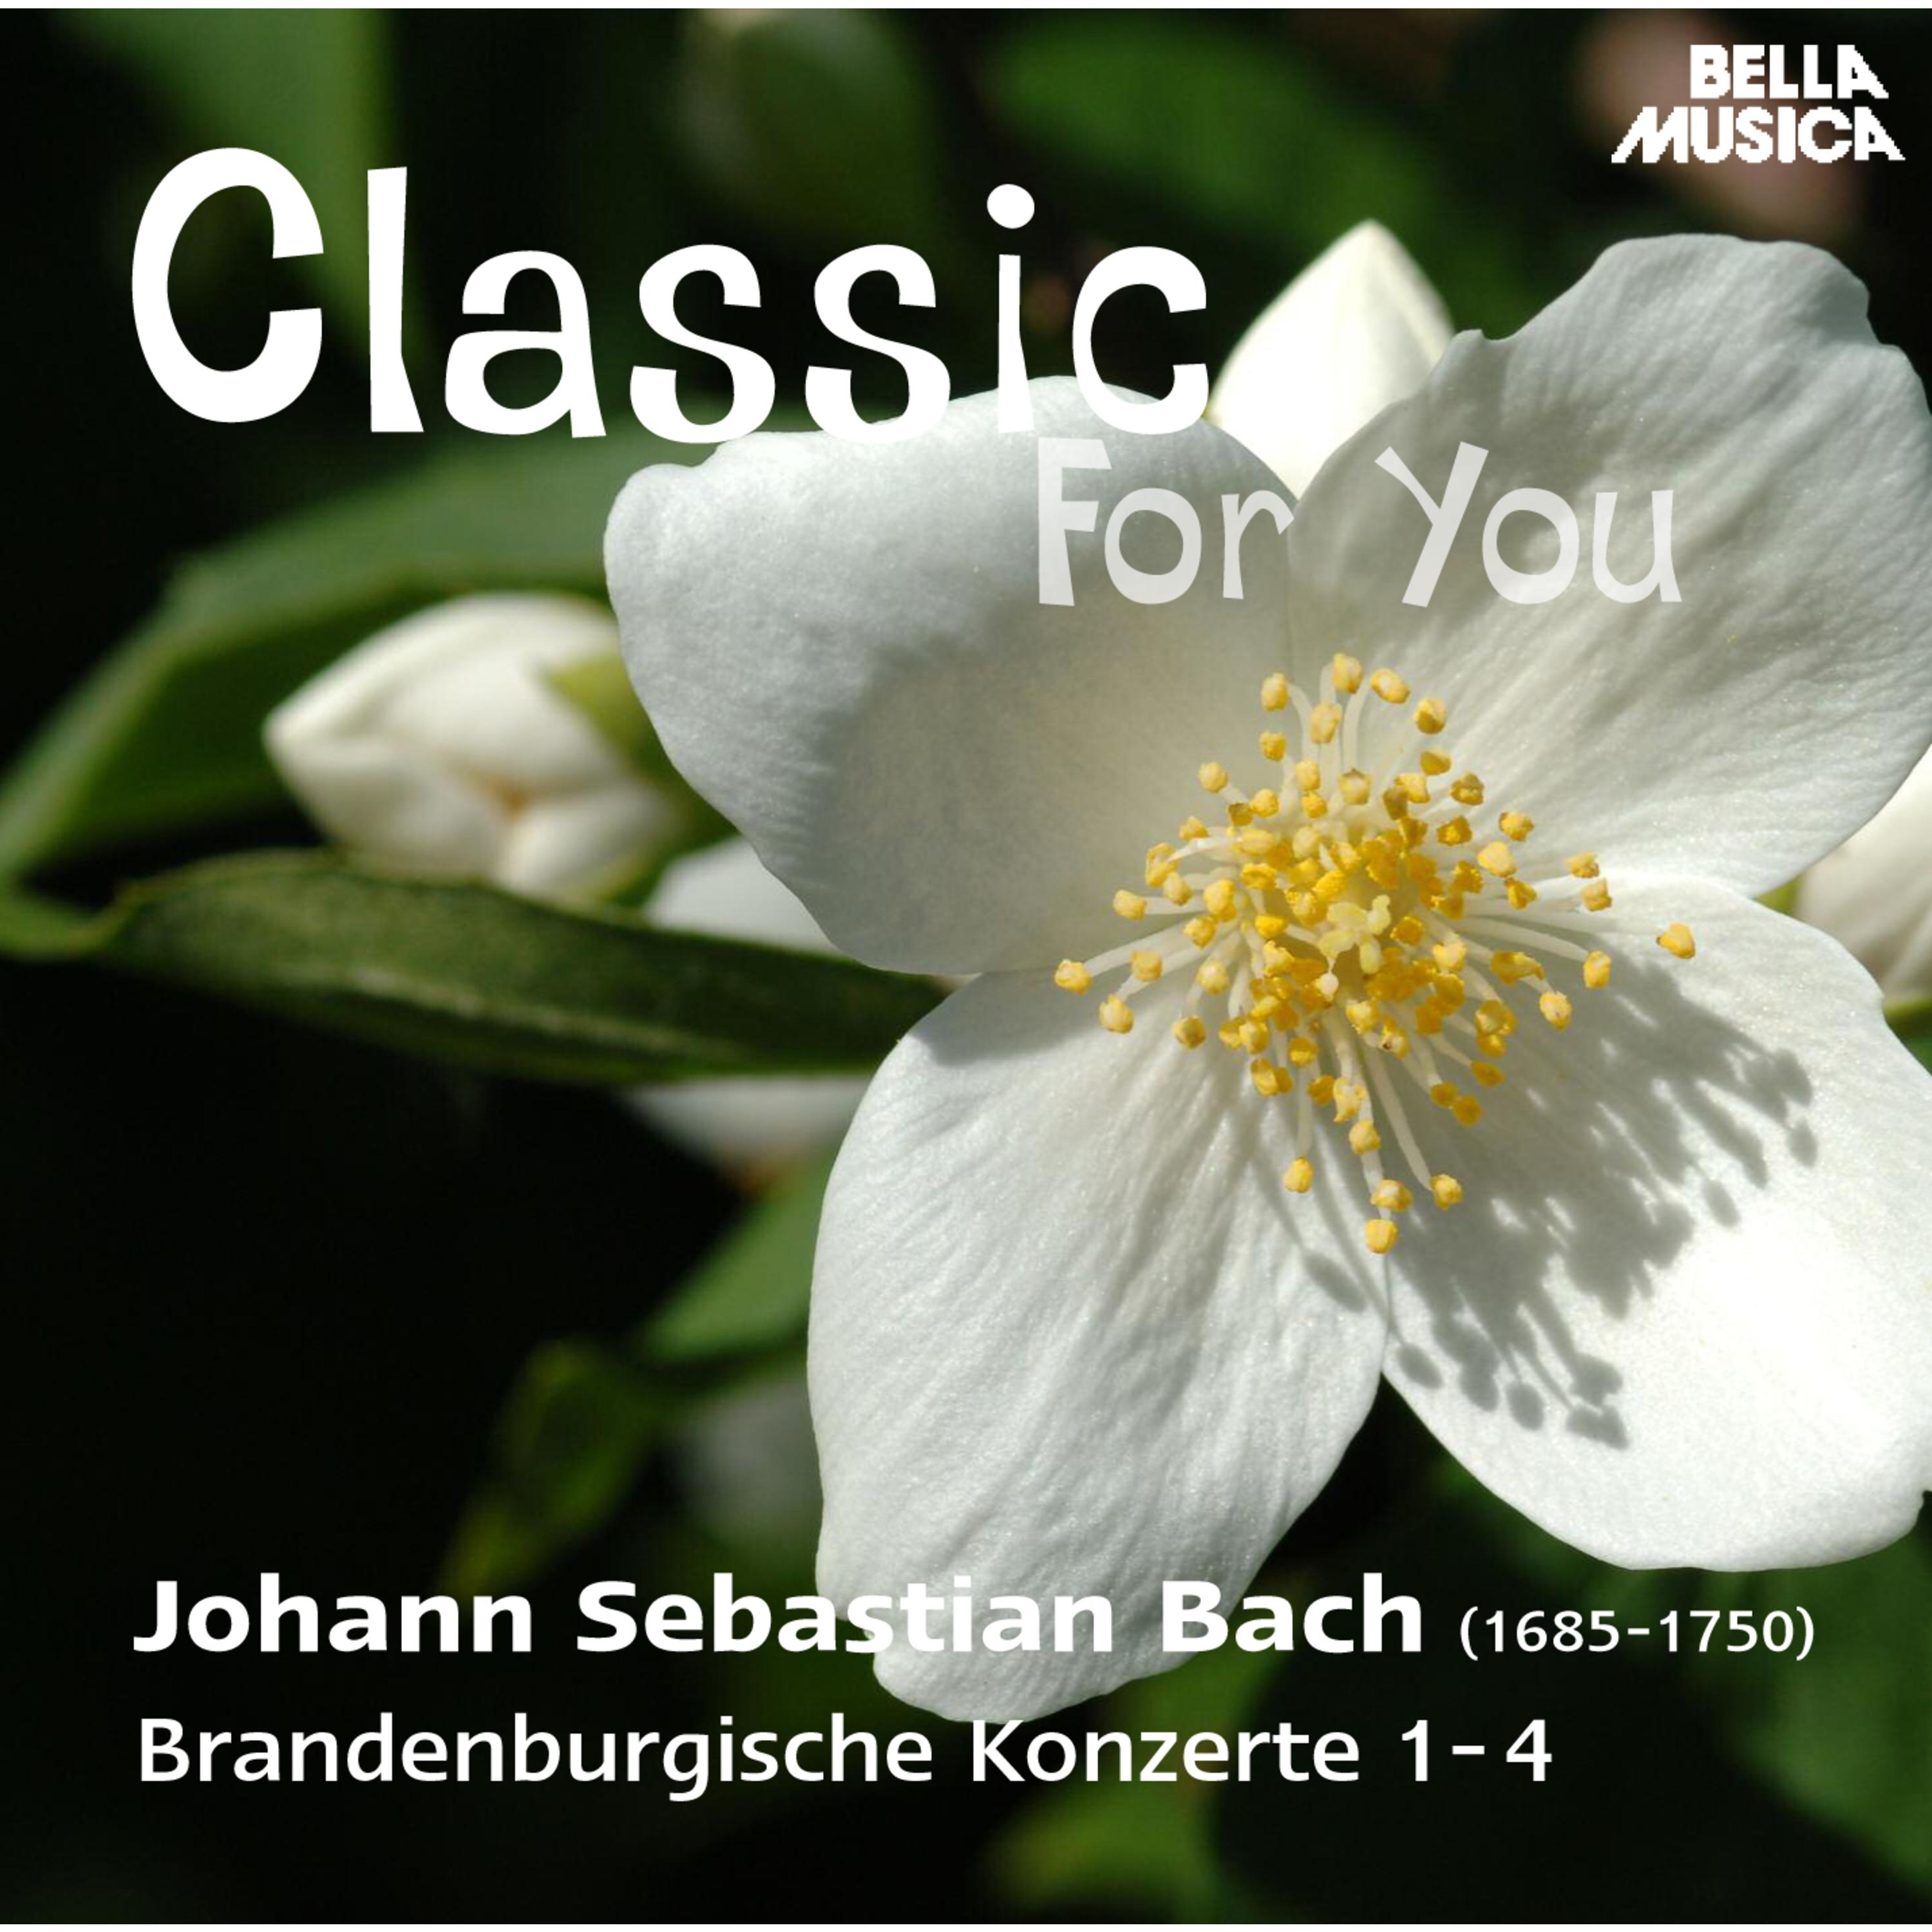 Brandenburgisches Konzert in F Major, BWV 1046, No. 1: IV. Menuetto - Trio I - Polacca - Trio II